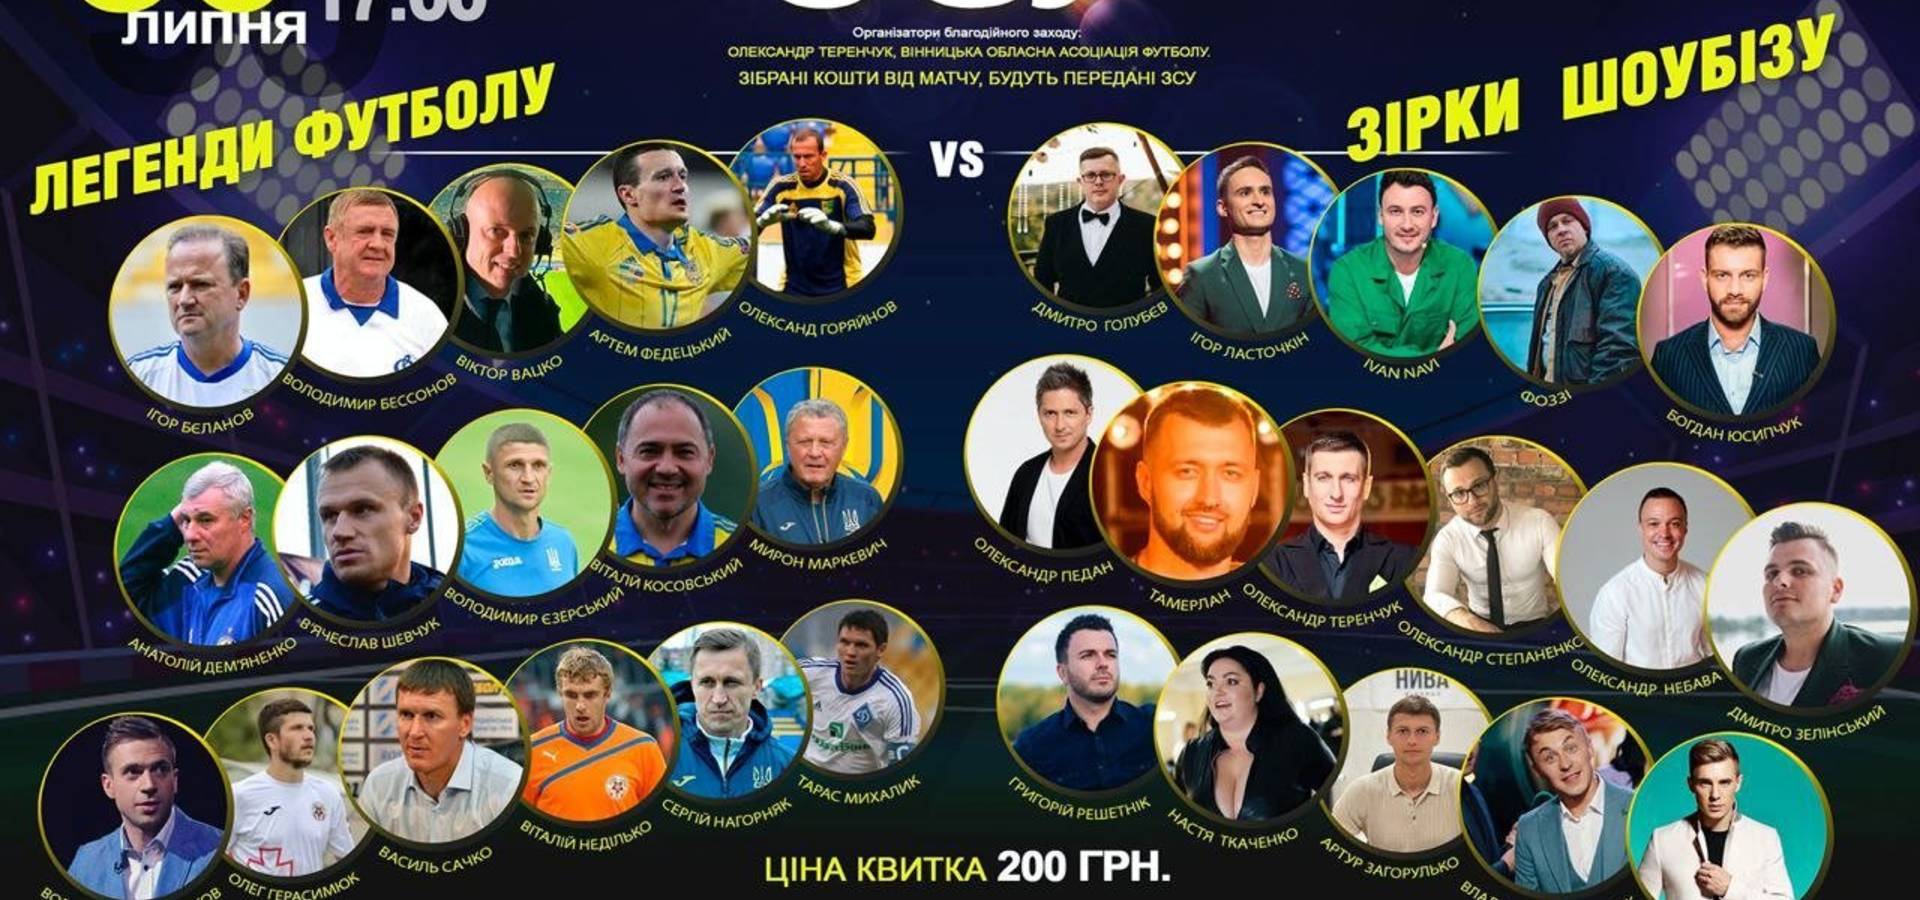 У Вінниці відбудеться благодійний футбольний матч на підтримку ЗСУ. Гратимуть «Легенди футболу» та «Зірки ШоуБізу»